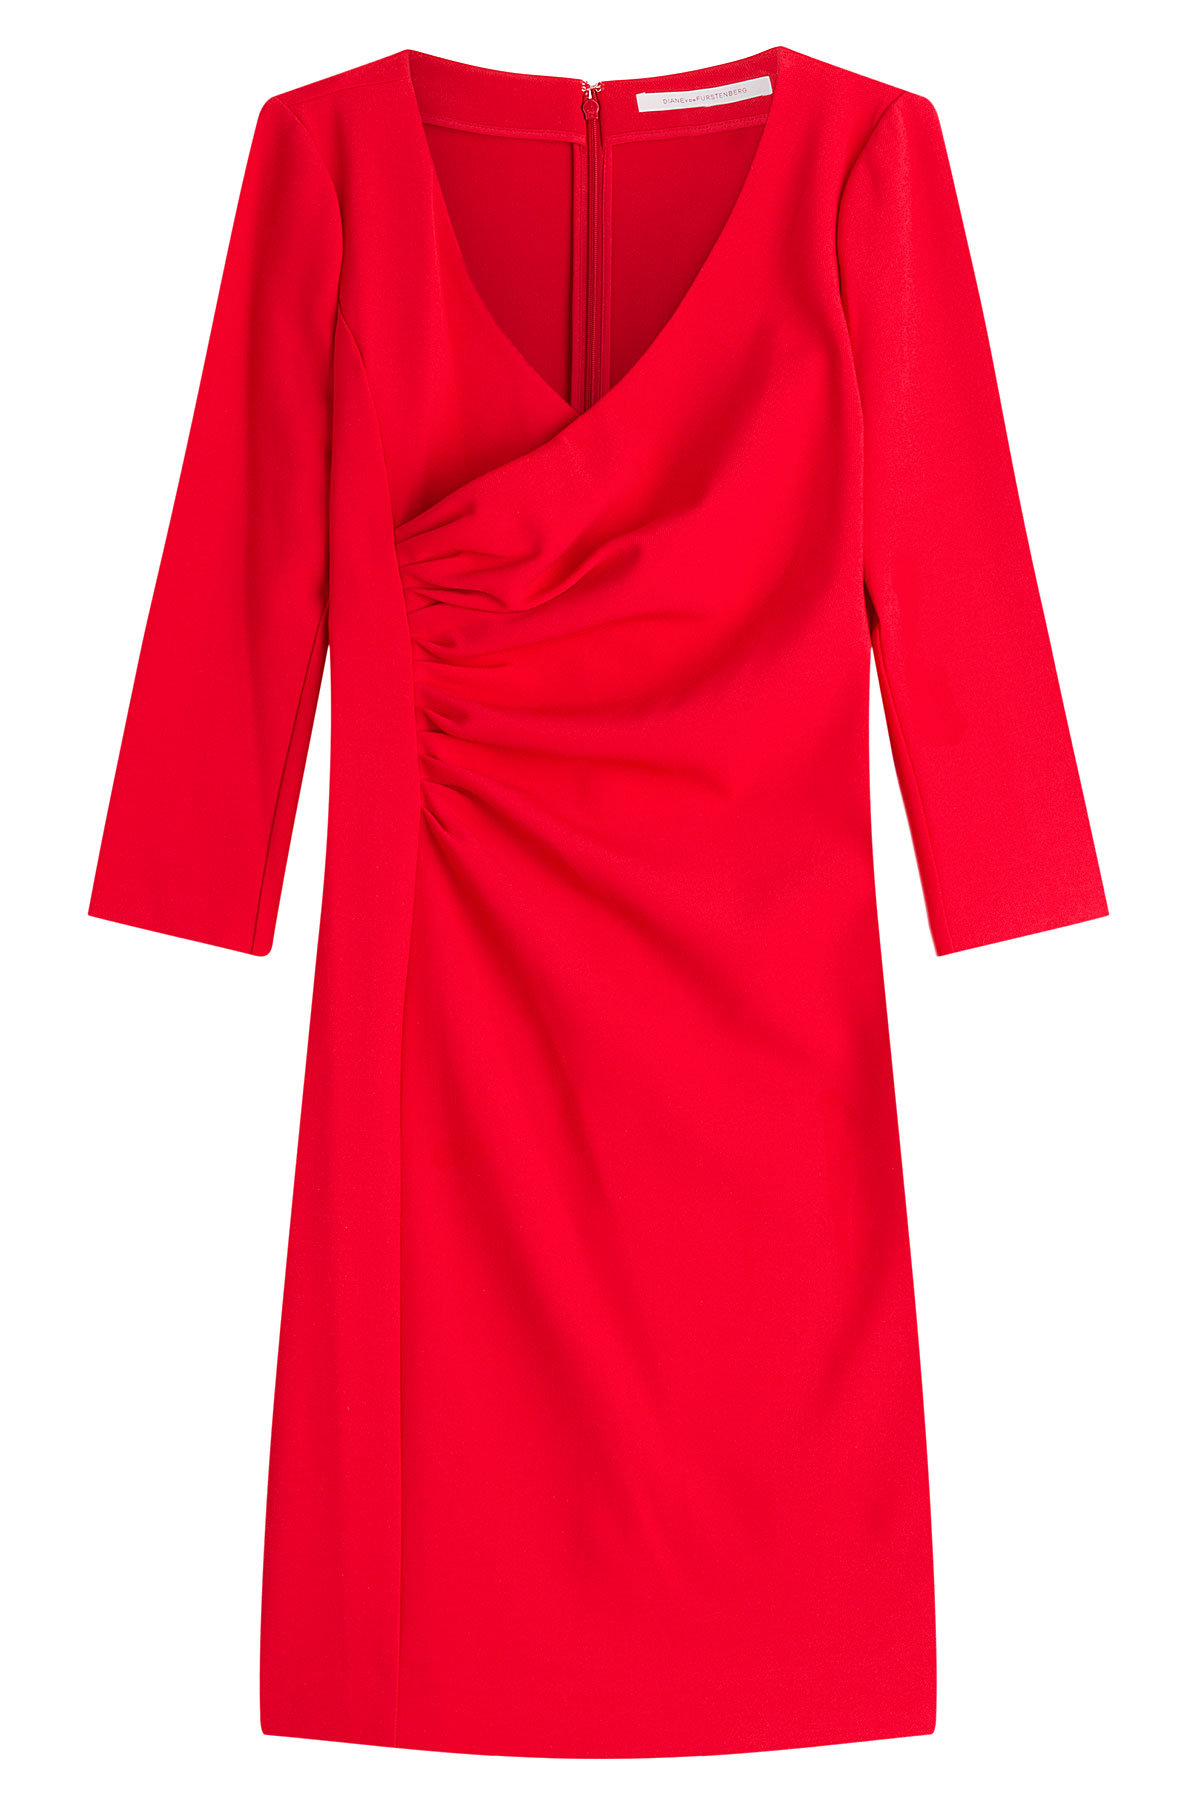 Diane von Furstenberg - Tailored Dress with Gathered Waist